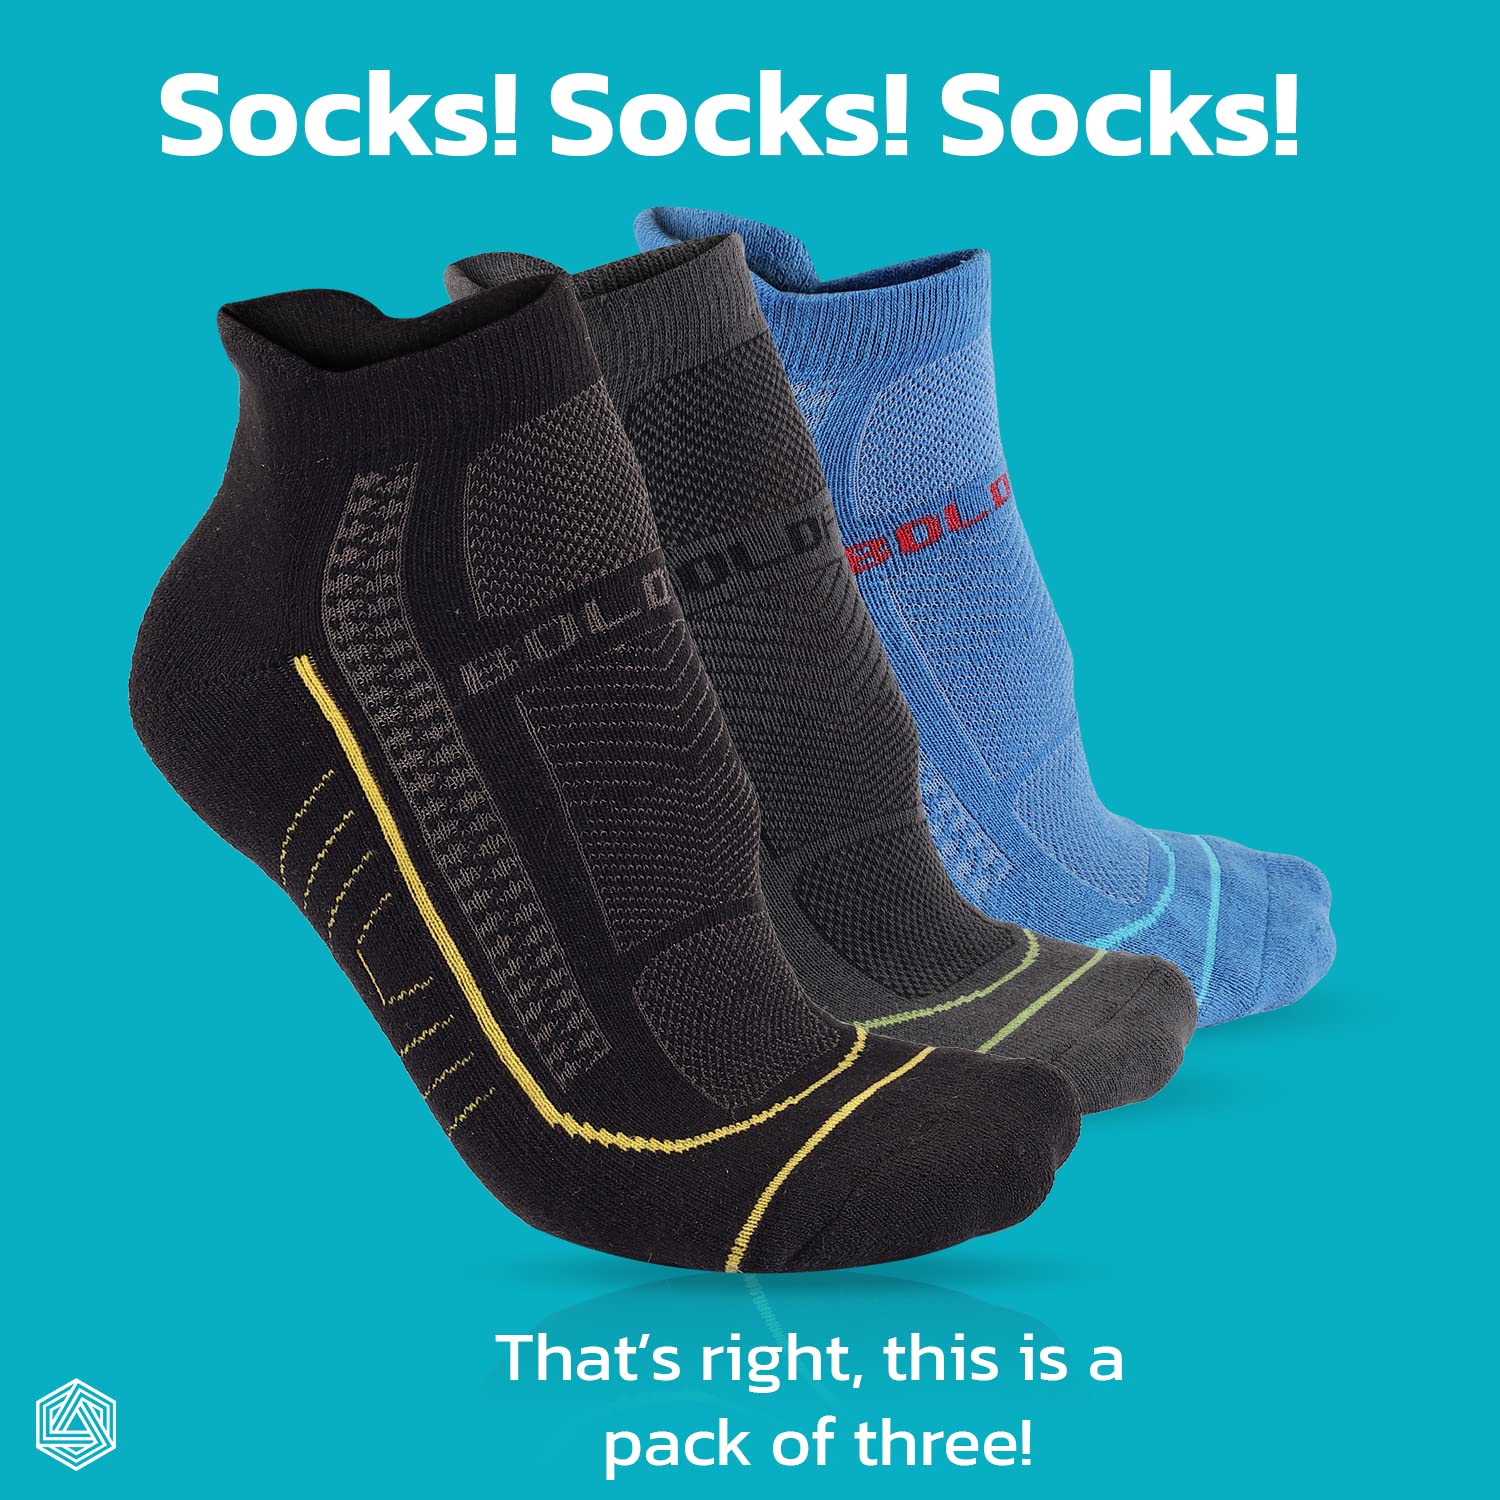 Boldfit Athletic socks for Men & women